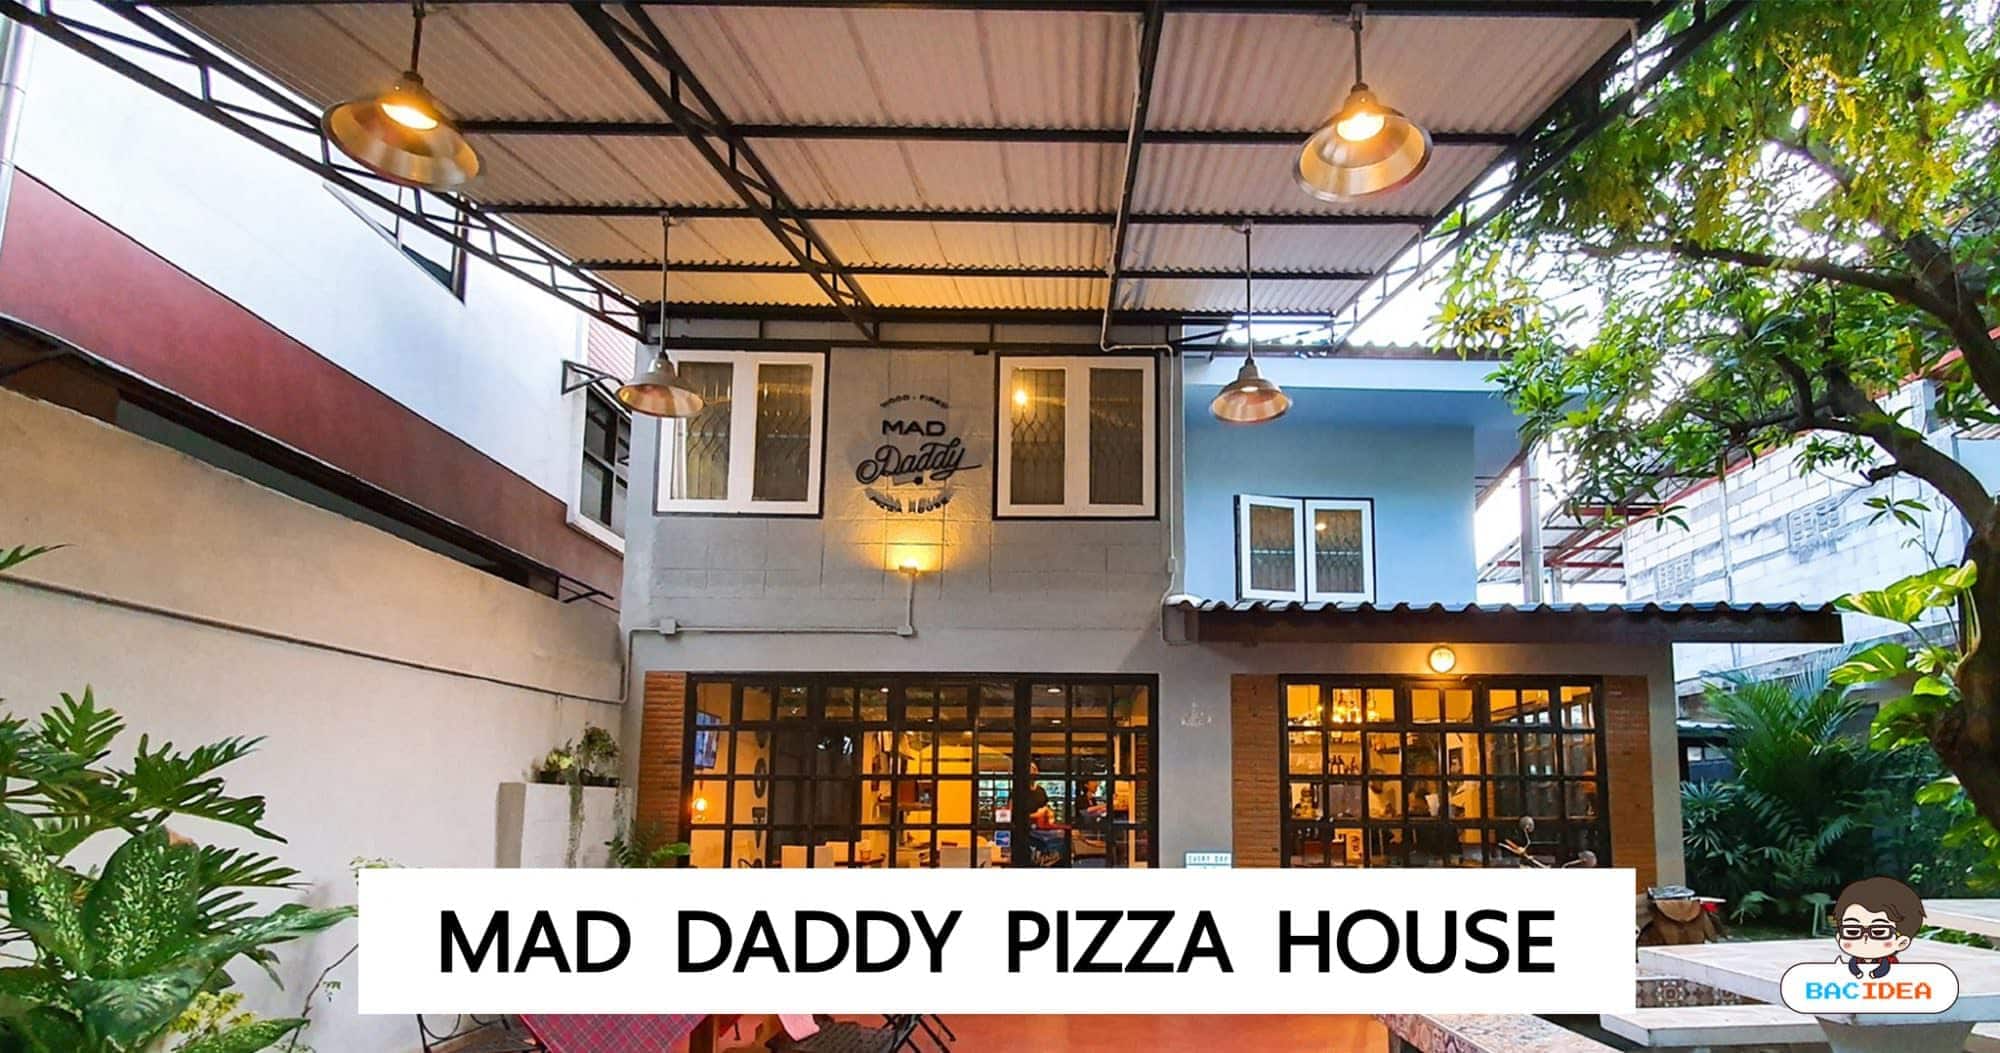 รีวิว Mad Daddy Pizza House ร้านพิซซ่าเตาฟืนในซอยลึกย่านท่าทราย หลังม. ธุรกิจบัณฑิต 1